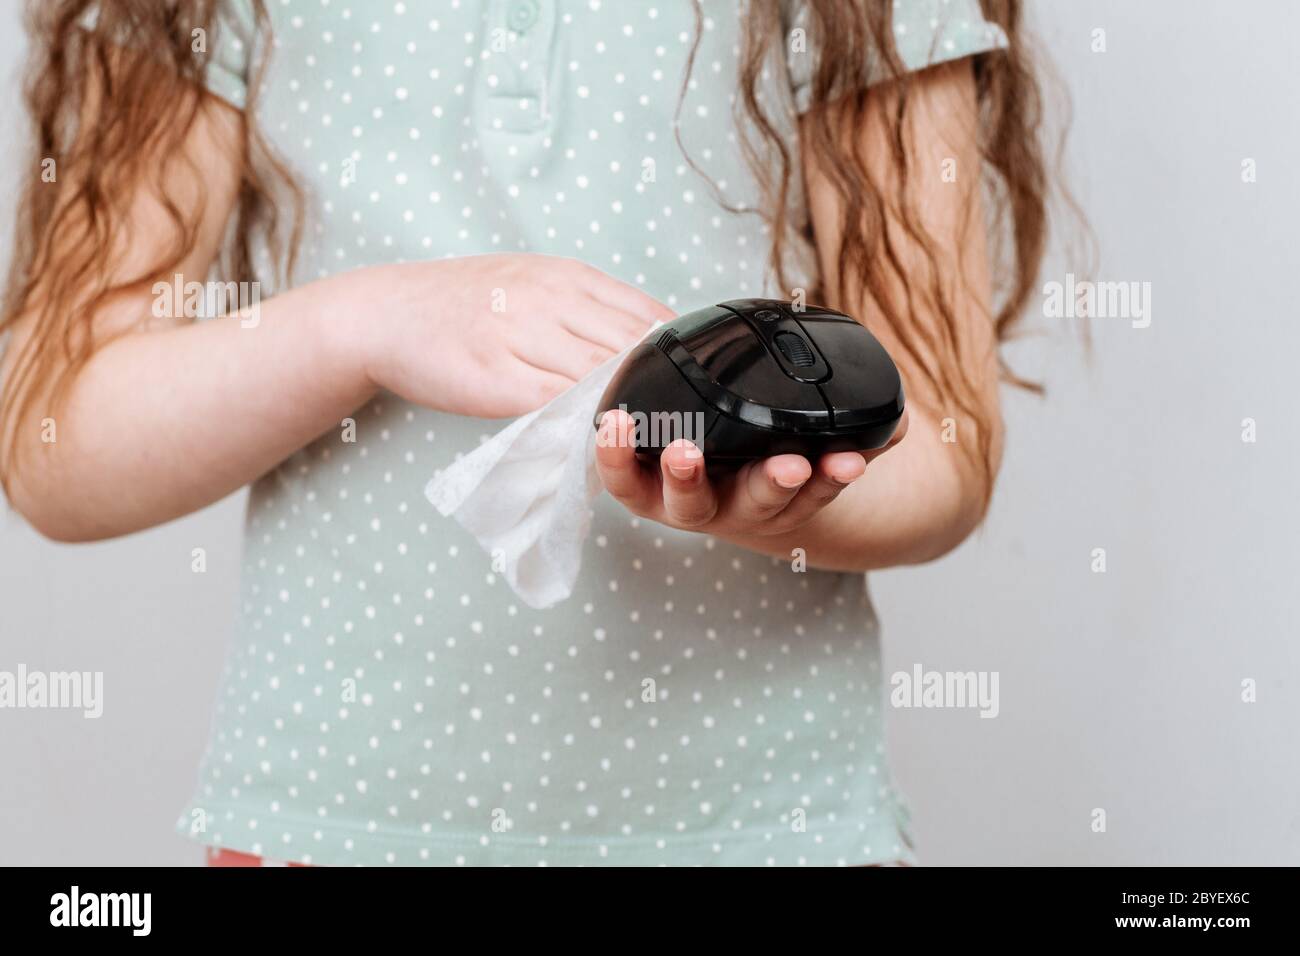 Une fille essuye une souris d'ordinateur avec un chiffon désinfectant. Combattre les virus et les bactéries pendant une pandémie Banque D'Images